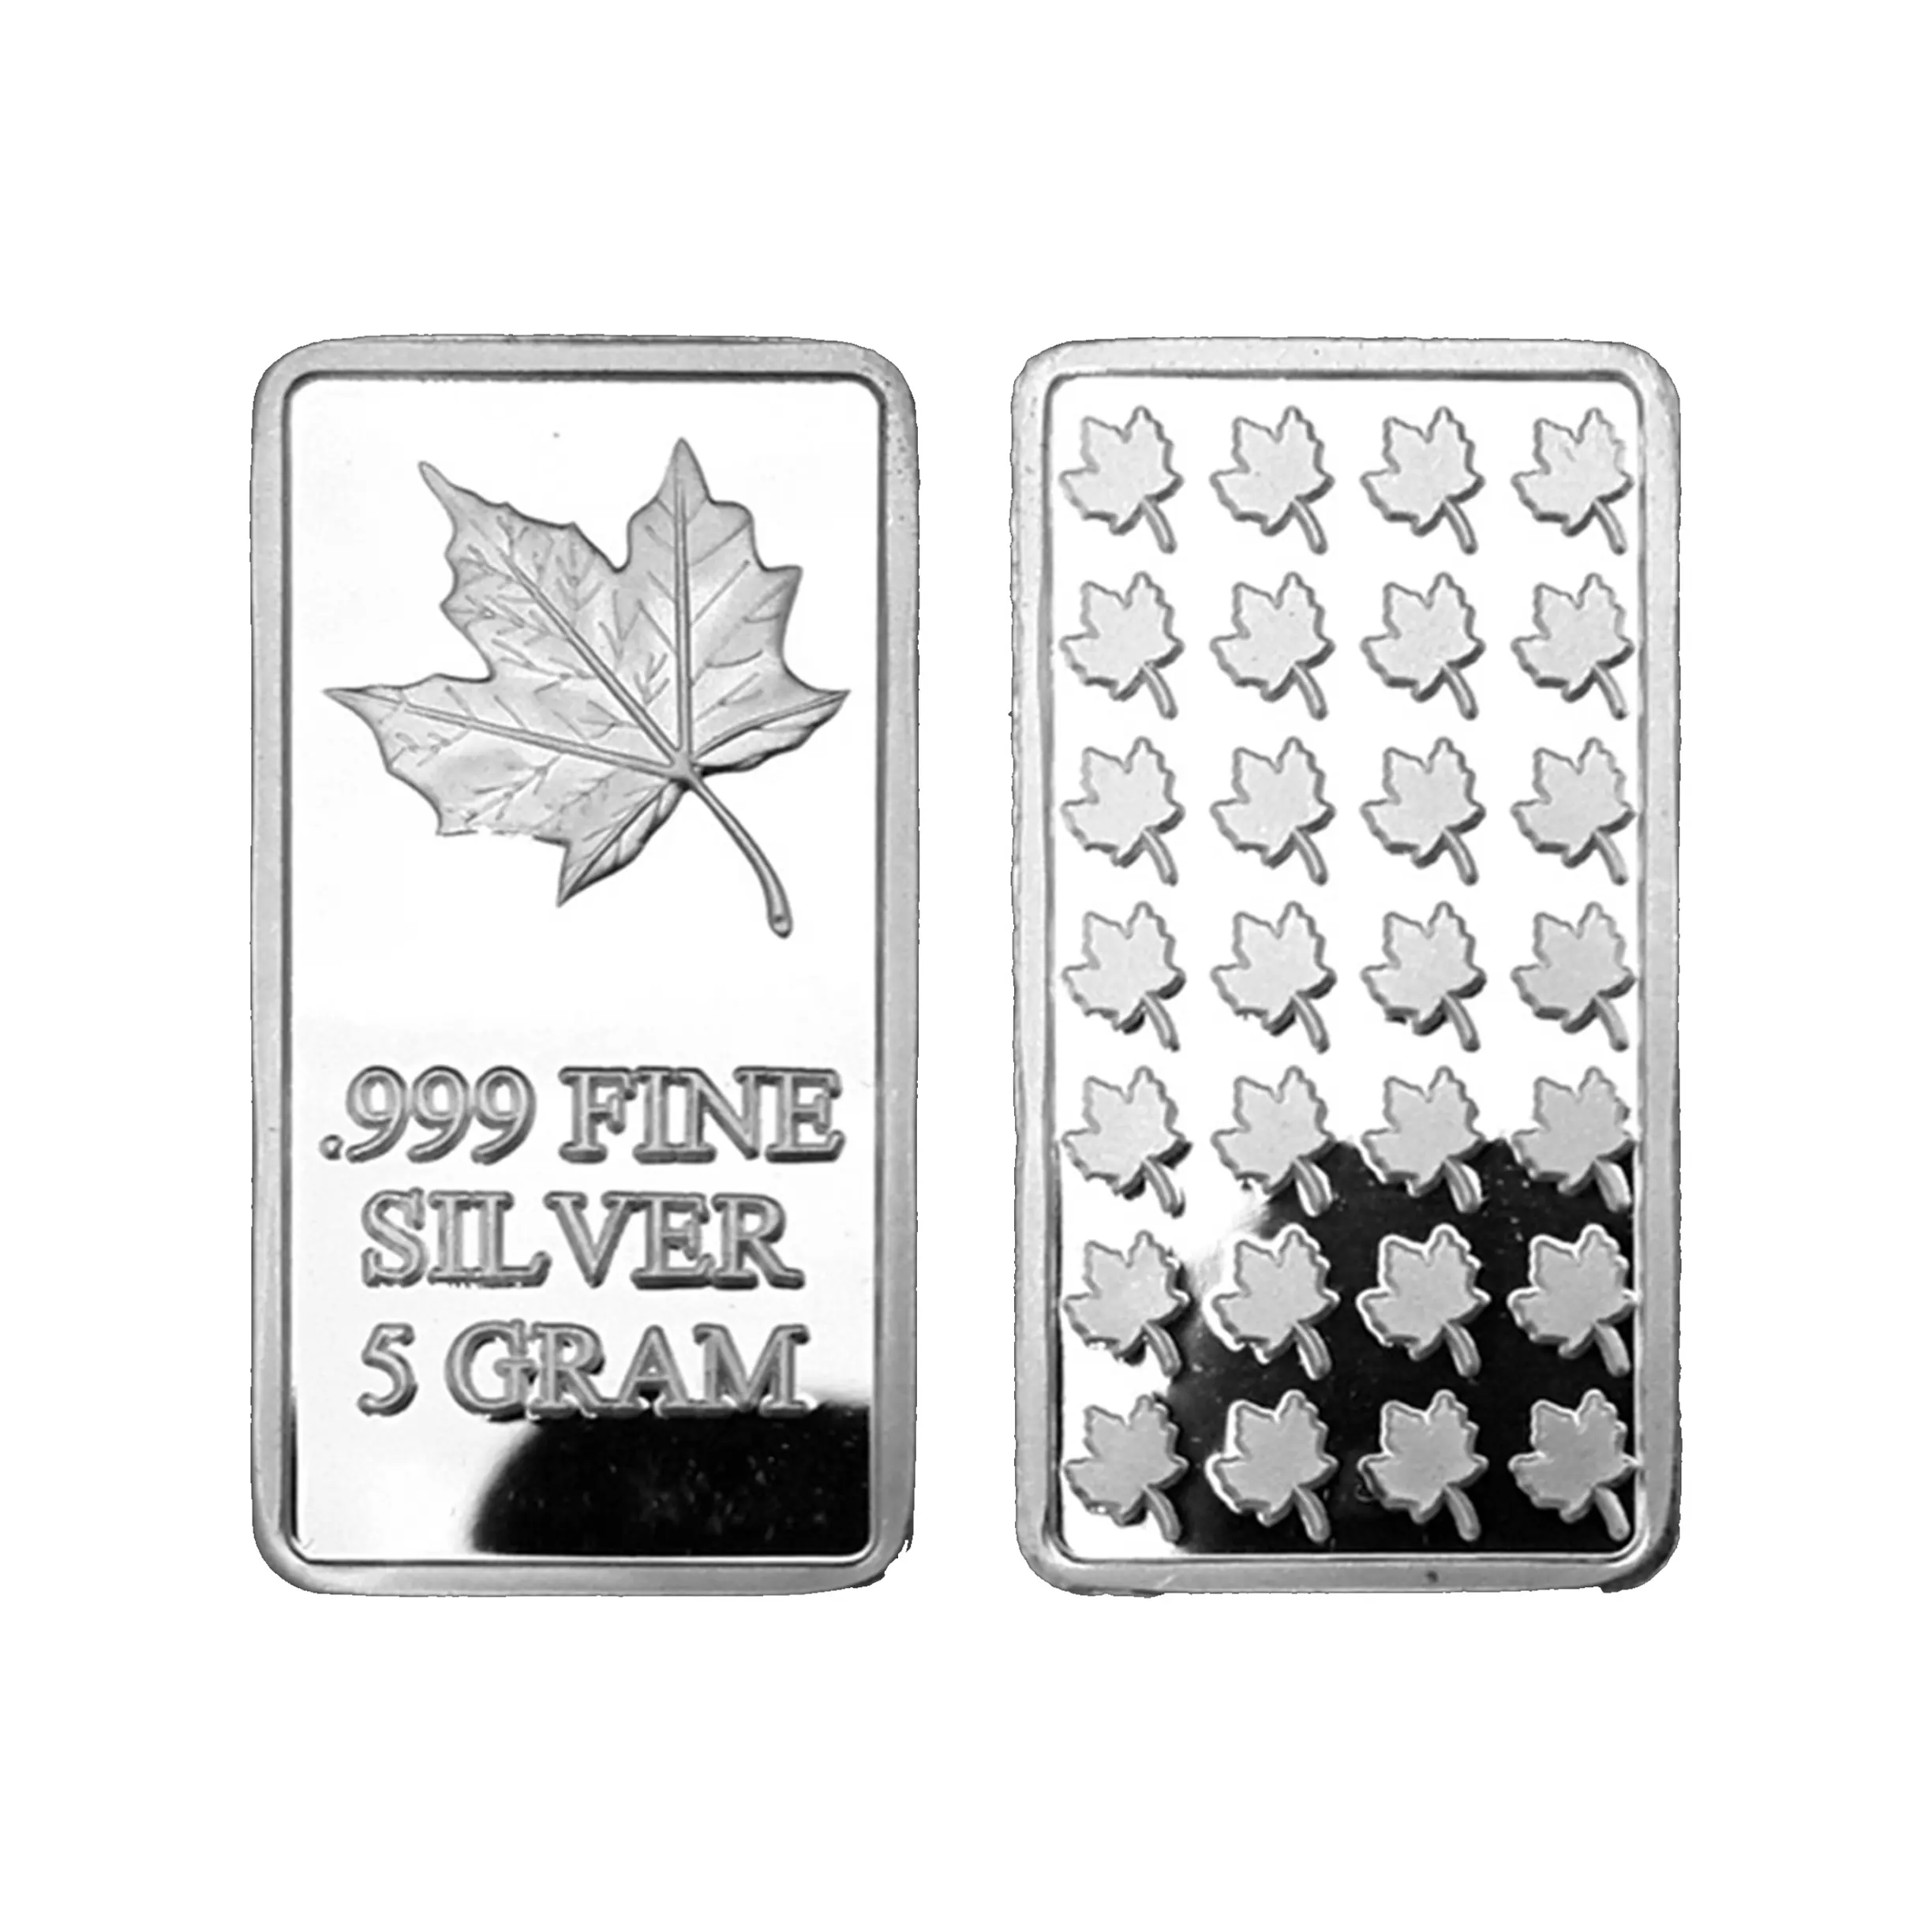 5 grammo. 999 FINE barra d'argento solido puro/foglia d'acero